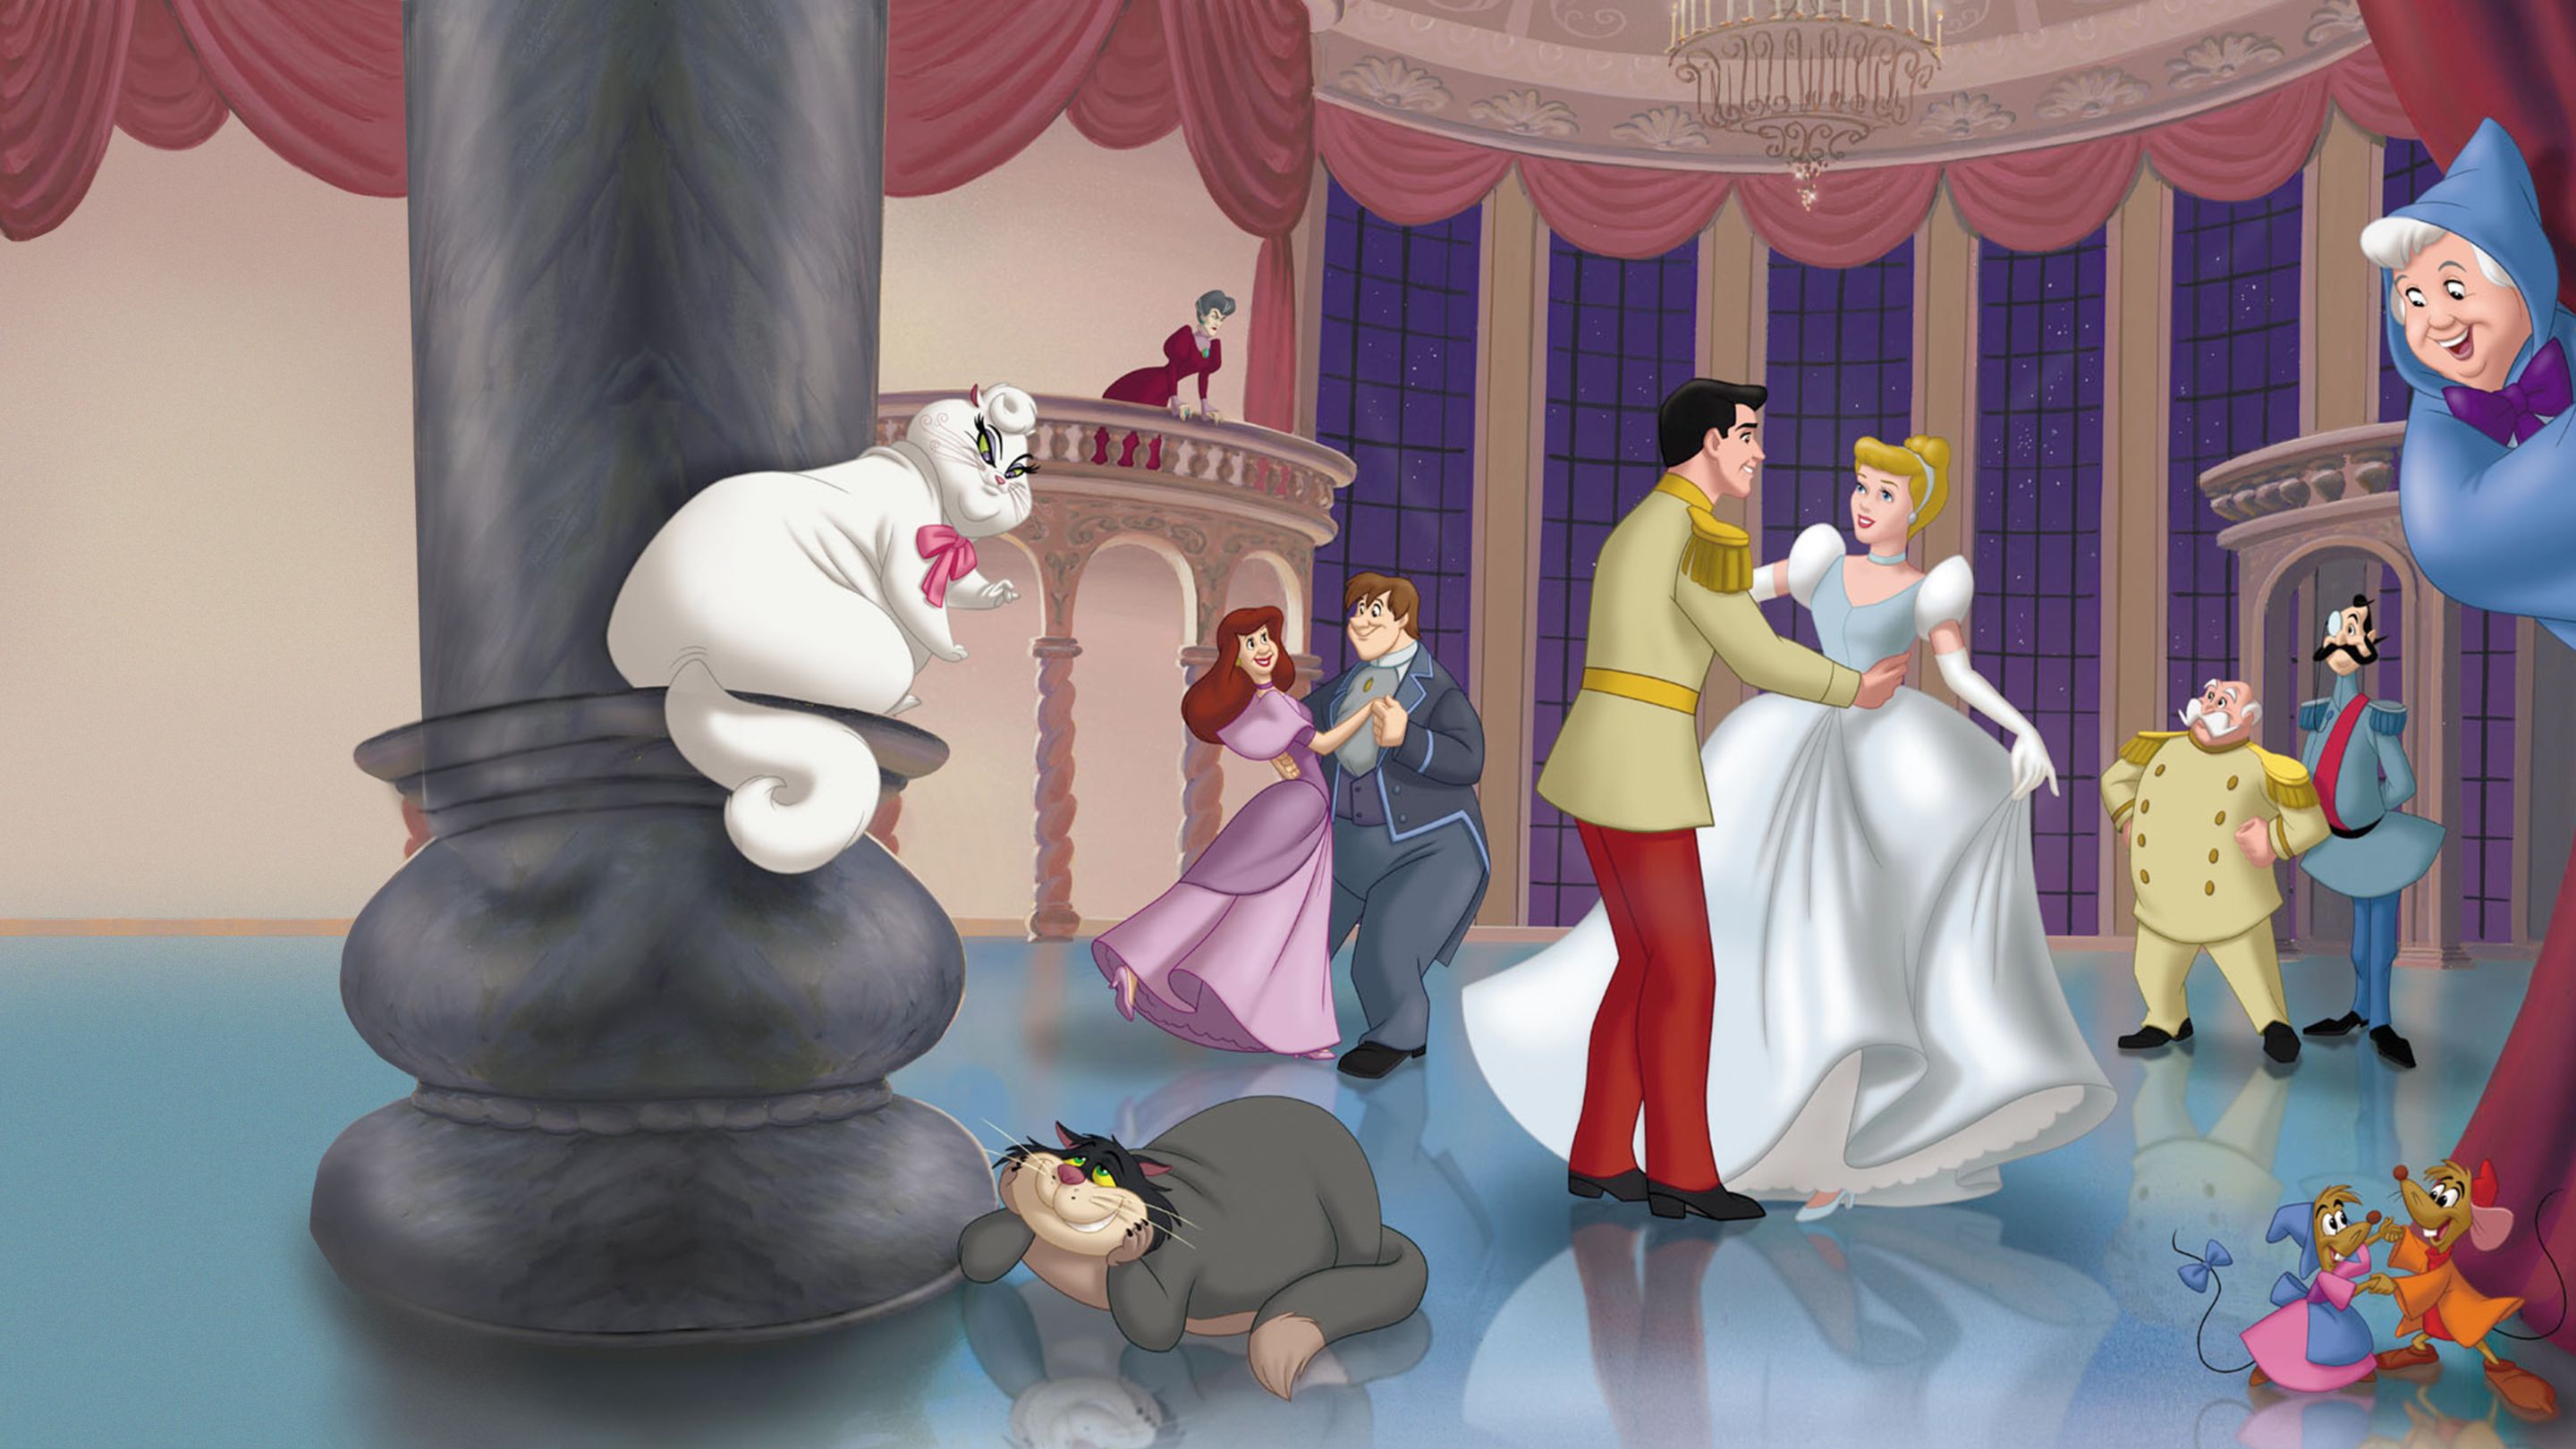 Cinderella II: Dreams Come True | Disney+